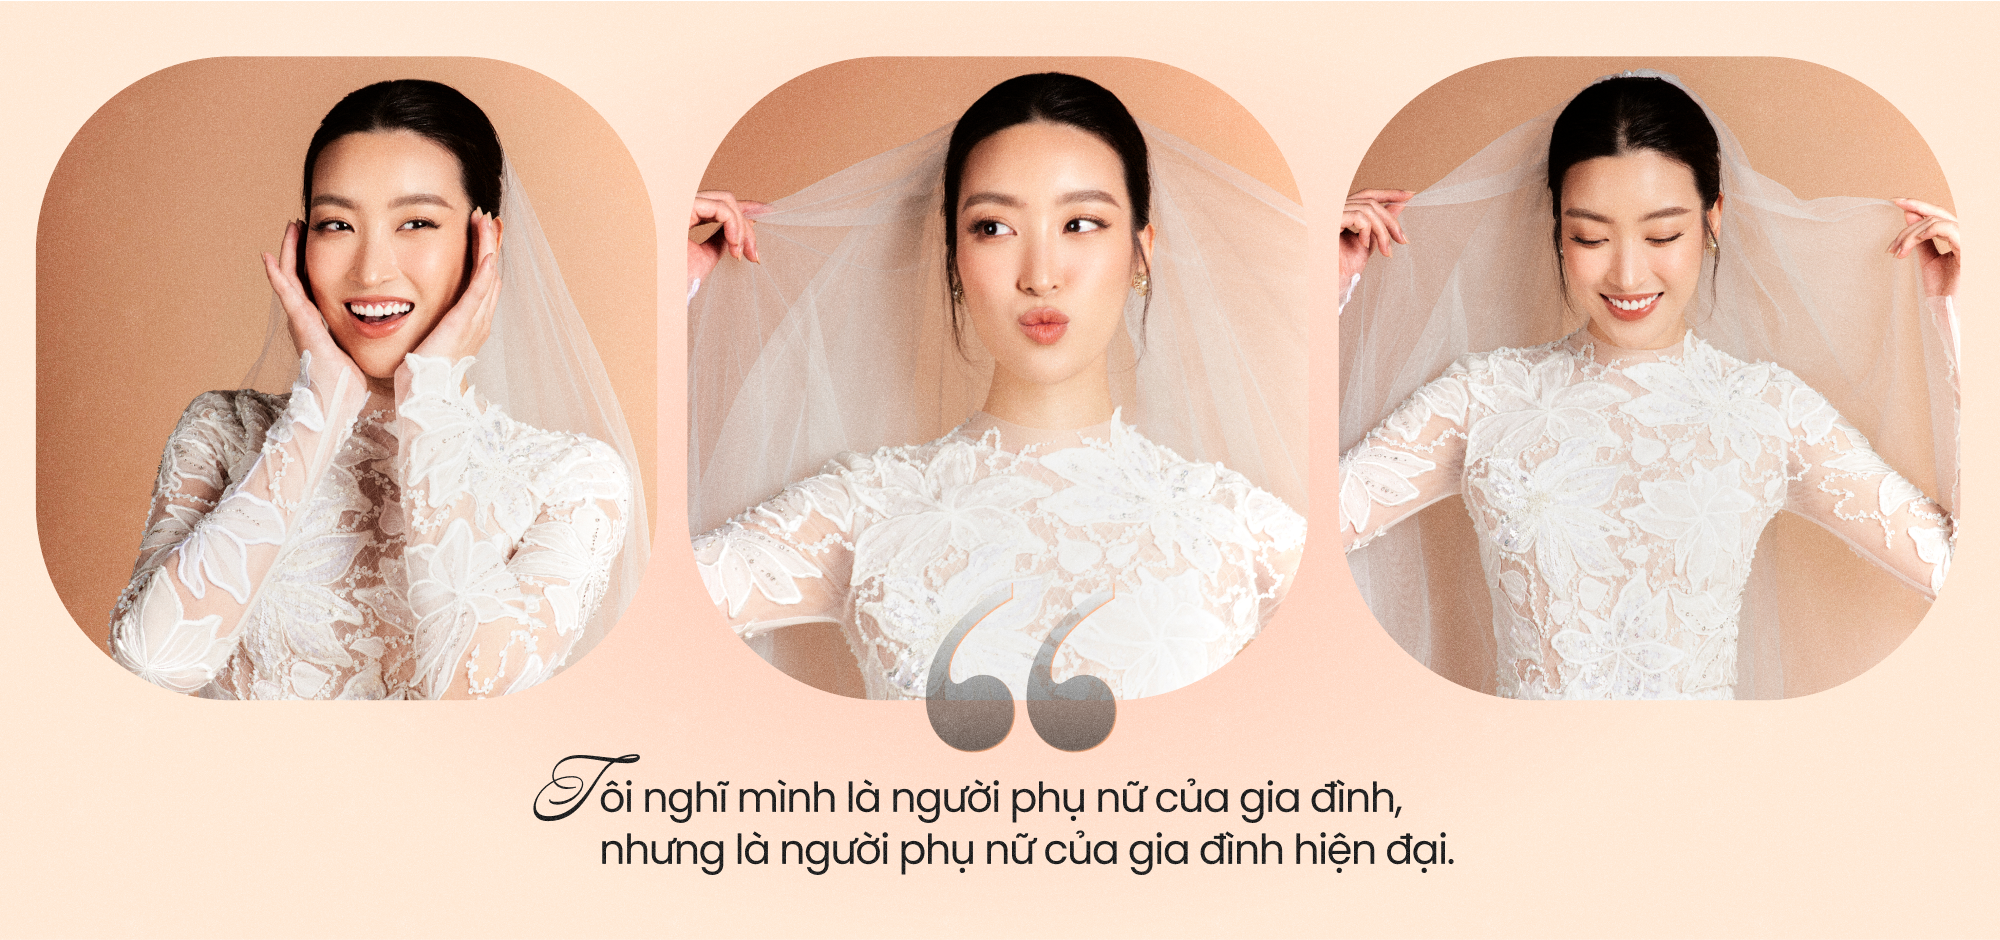 Hoa hậu Đỗ Mỹ Linh: Lần đầu gặp nhau, bạn trai khá nhút nhát, rụt rè nên tôi thấy rất dễ thương - Ảnh 41.